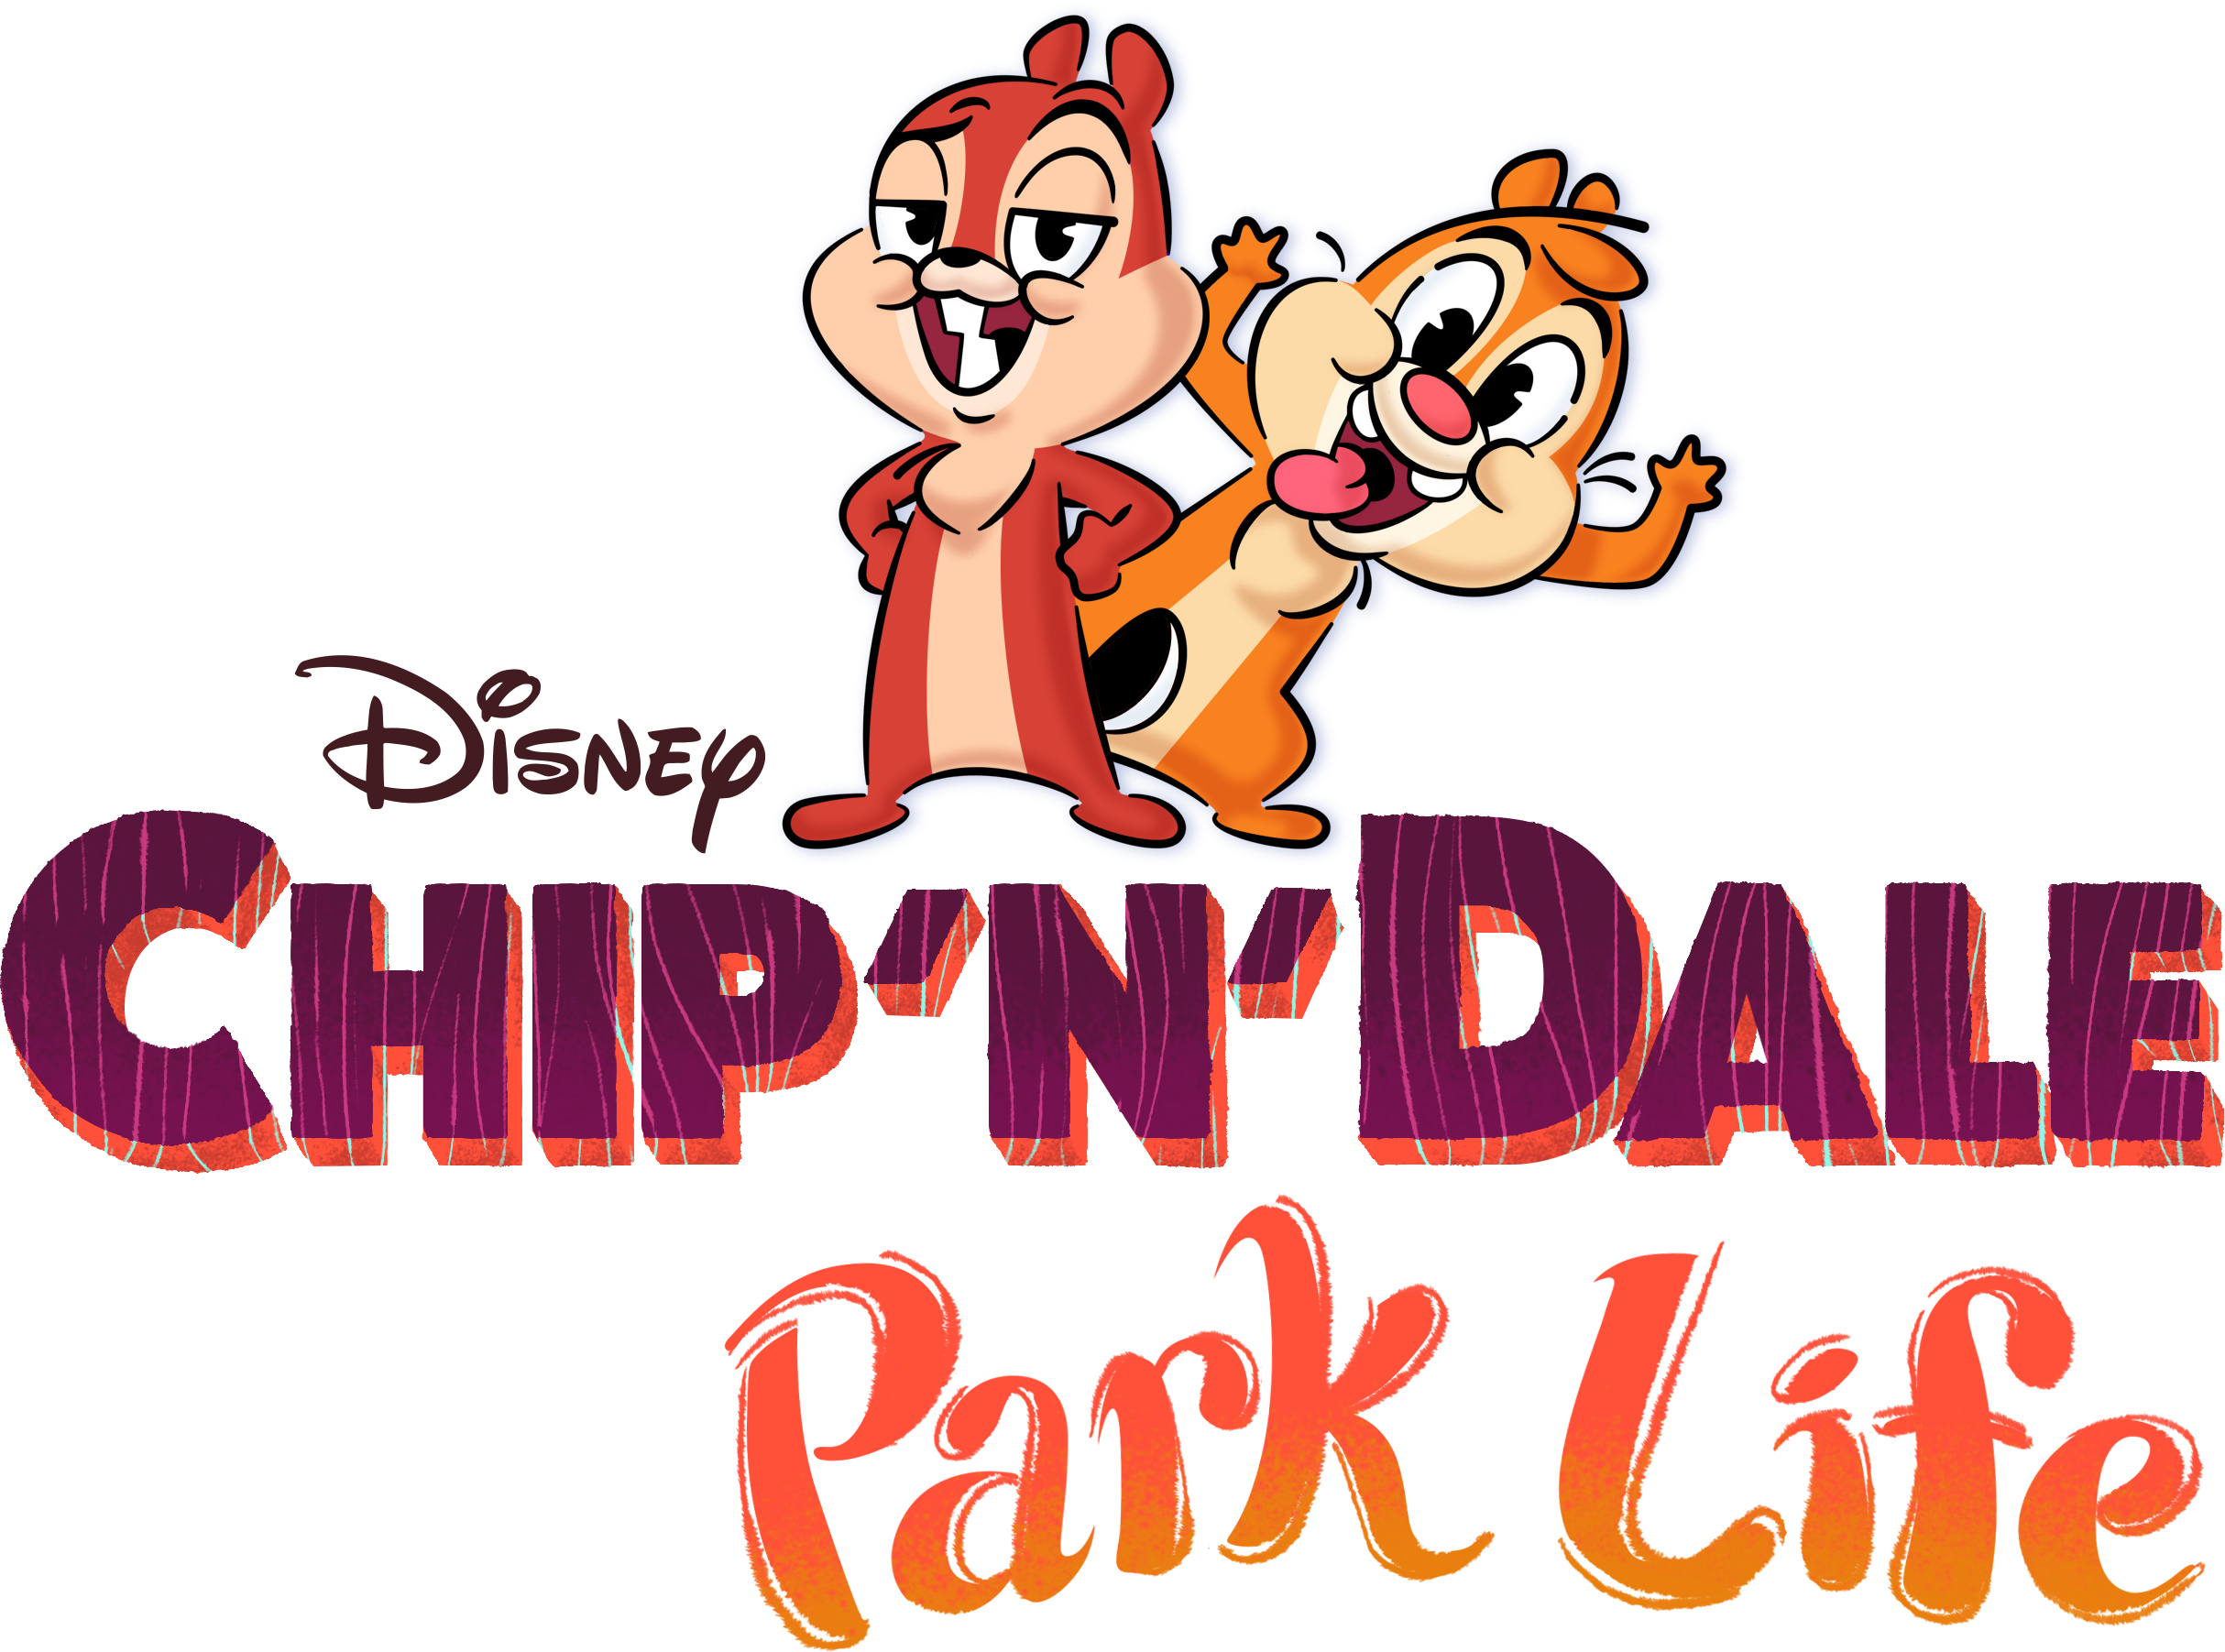 Chip 'n' Dale: Park Life - Lanzamiento del tráiler |  Qué hay en Disney Plus